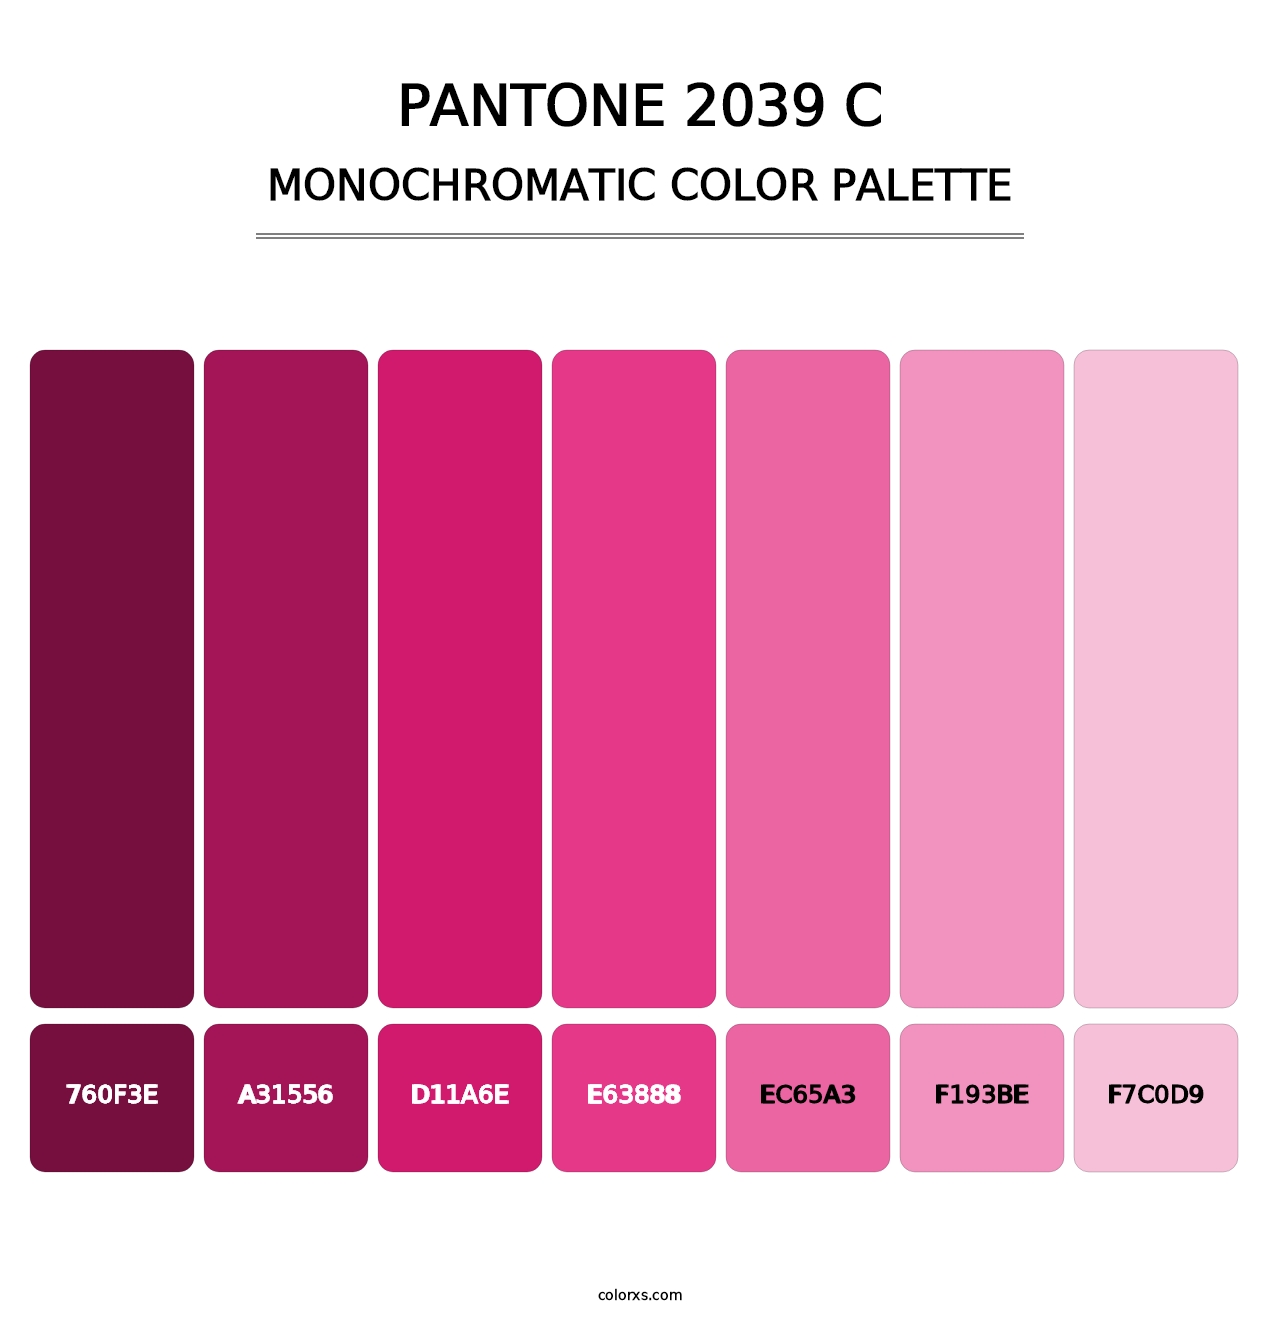 PANTONE 2039 C - Monochromatic Color Palette